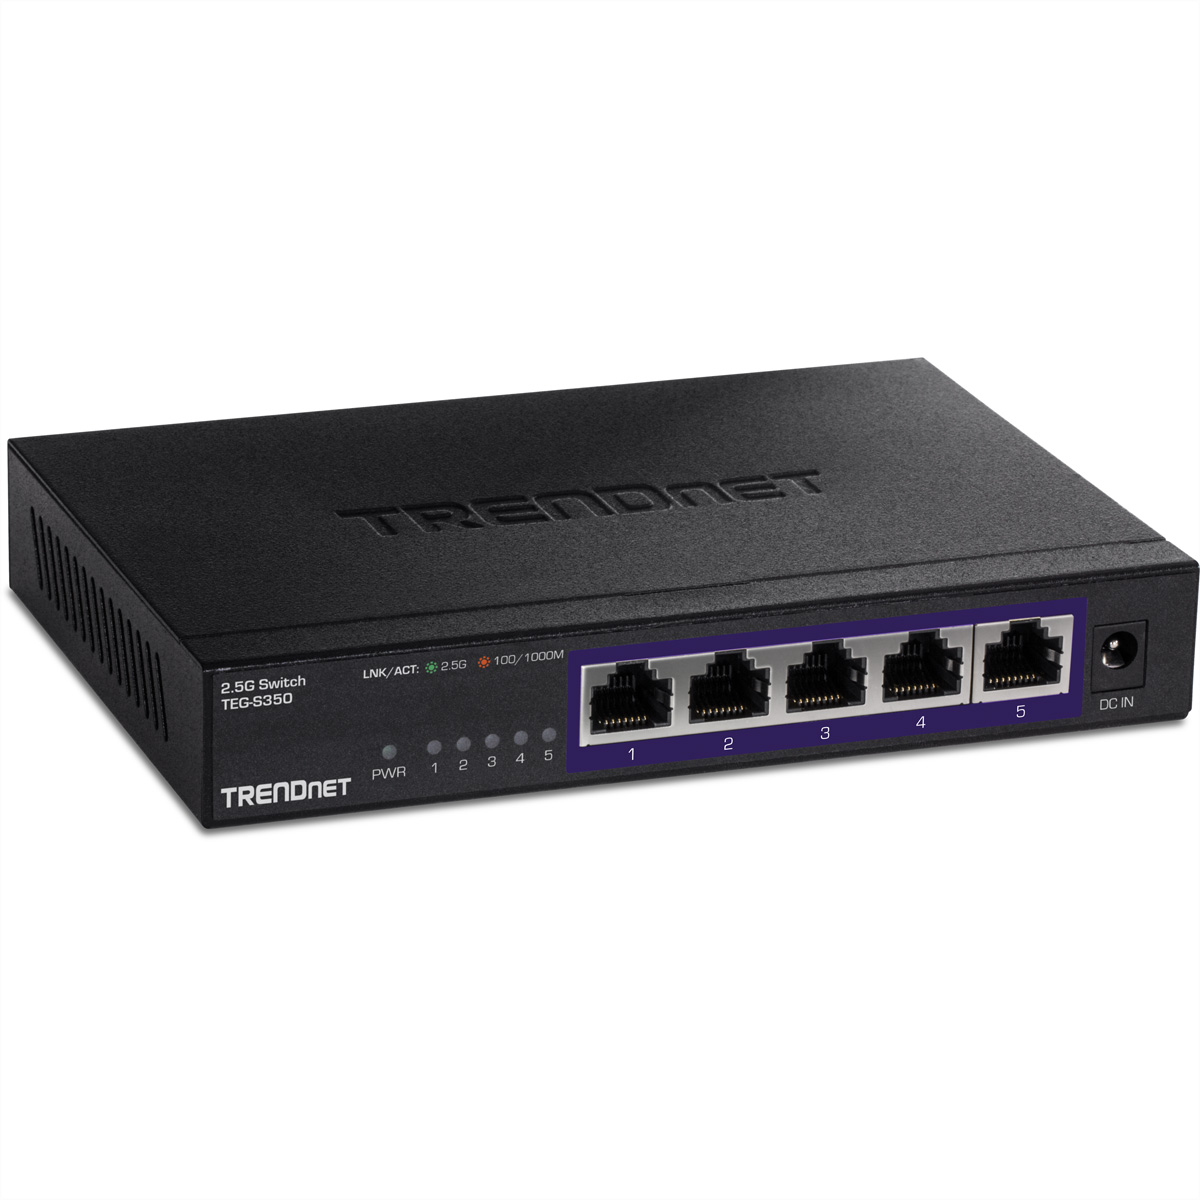 TRENDnet TEG-S350 5-Port 2.5G Switch, Unmanaged, schwarz